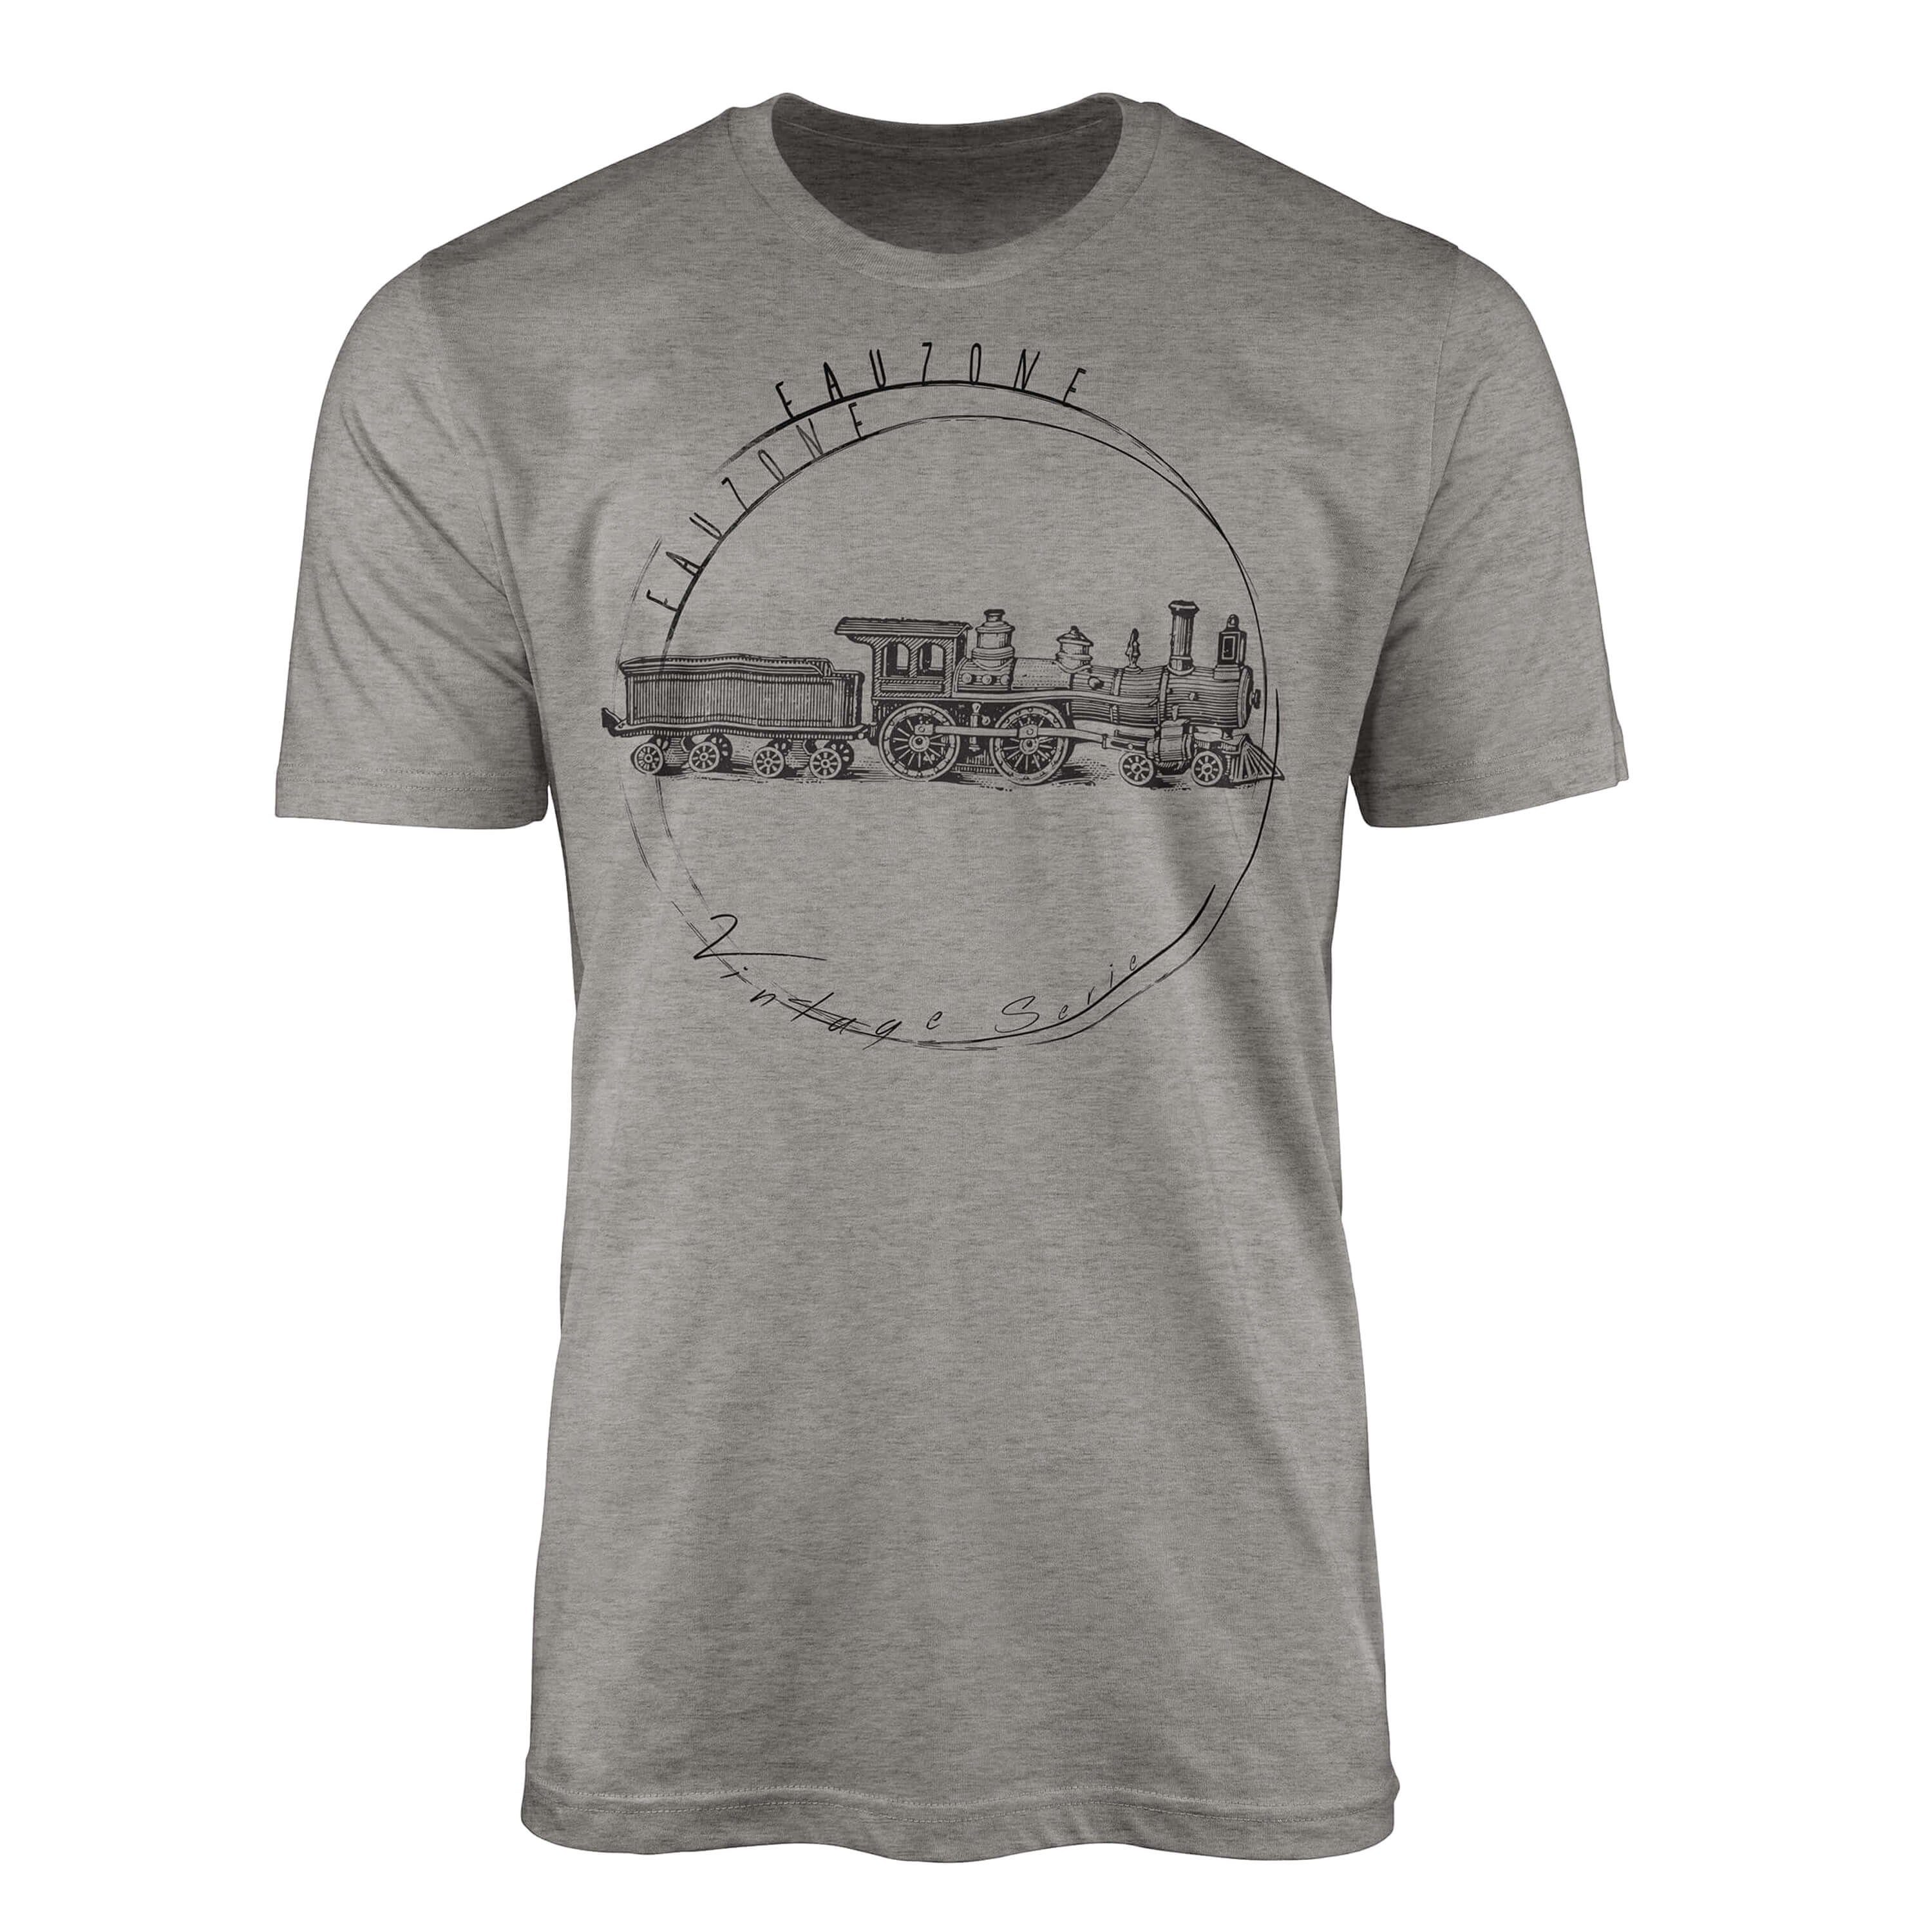 Sinus Art T-Shirt Vintage Herren T-Shirt Lokomotive Ash